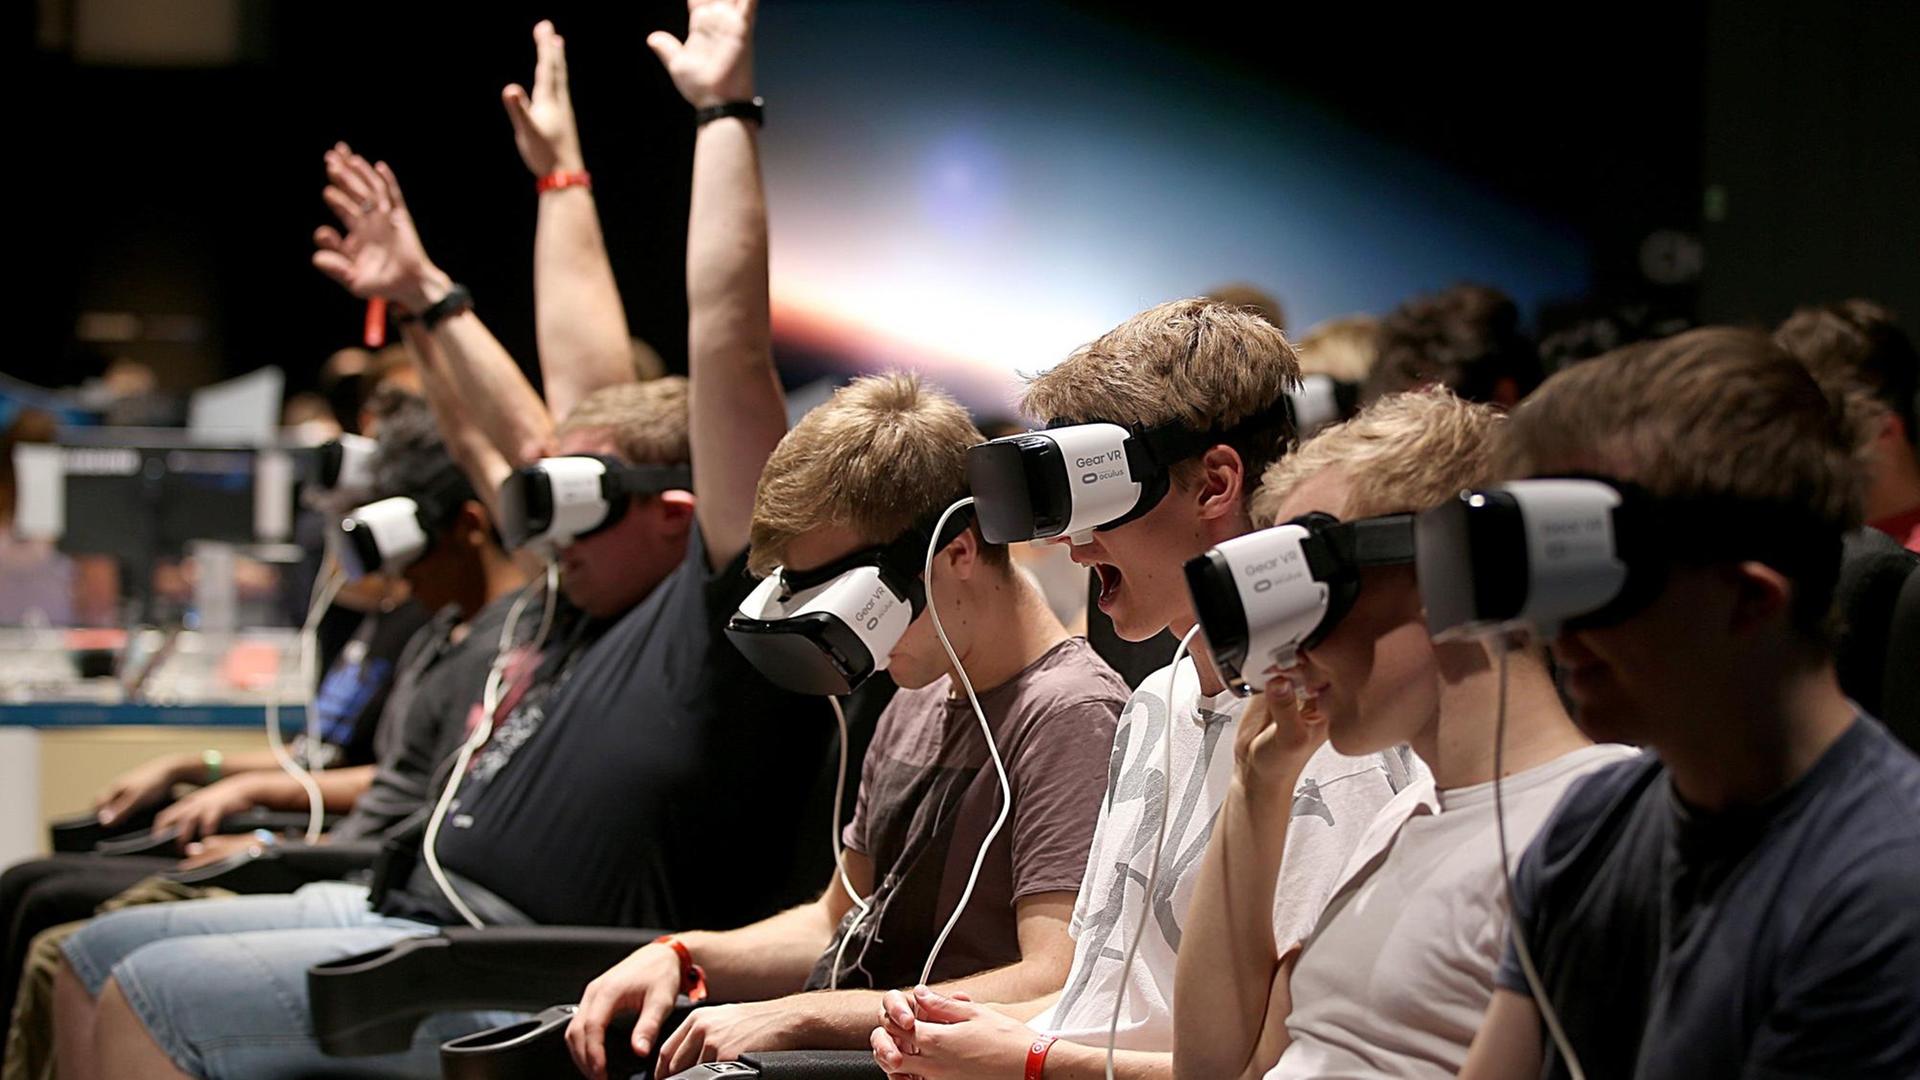 Besucher der Gamescom machen am 23.08.2017 in Köln mit einer Gear-VR Brille eine Achterbahnfahrt.